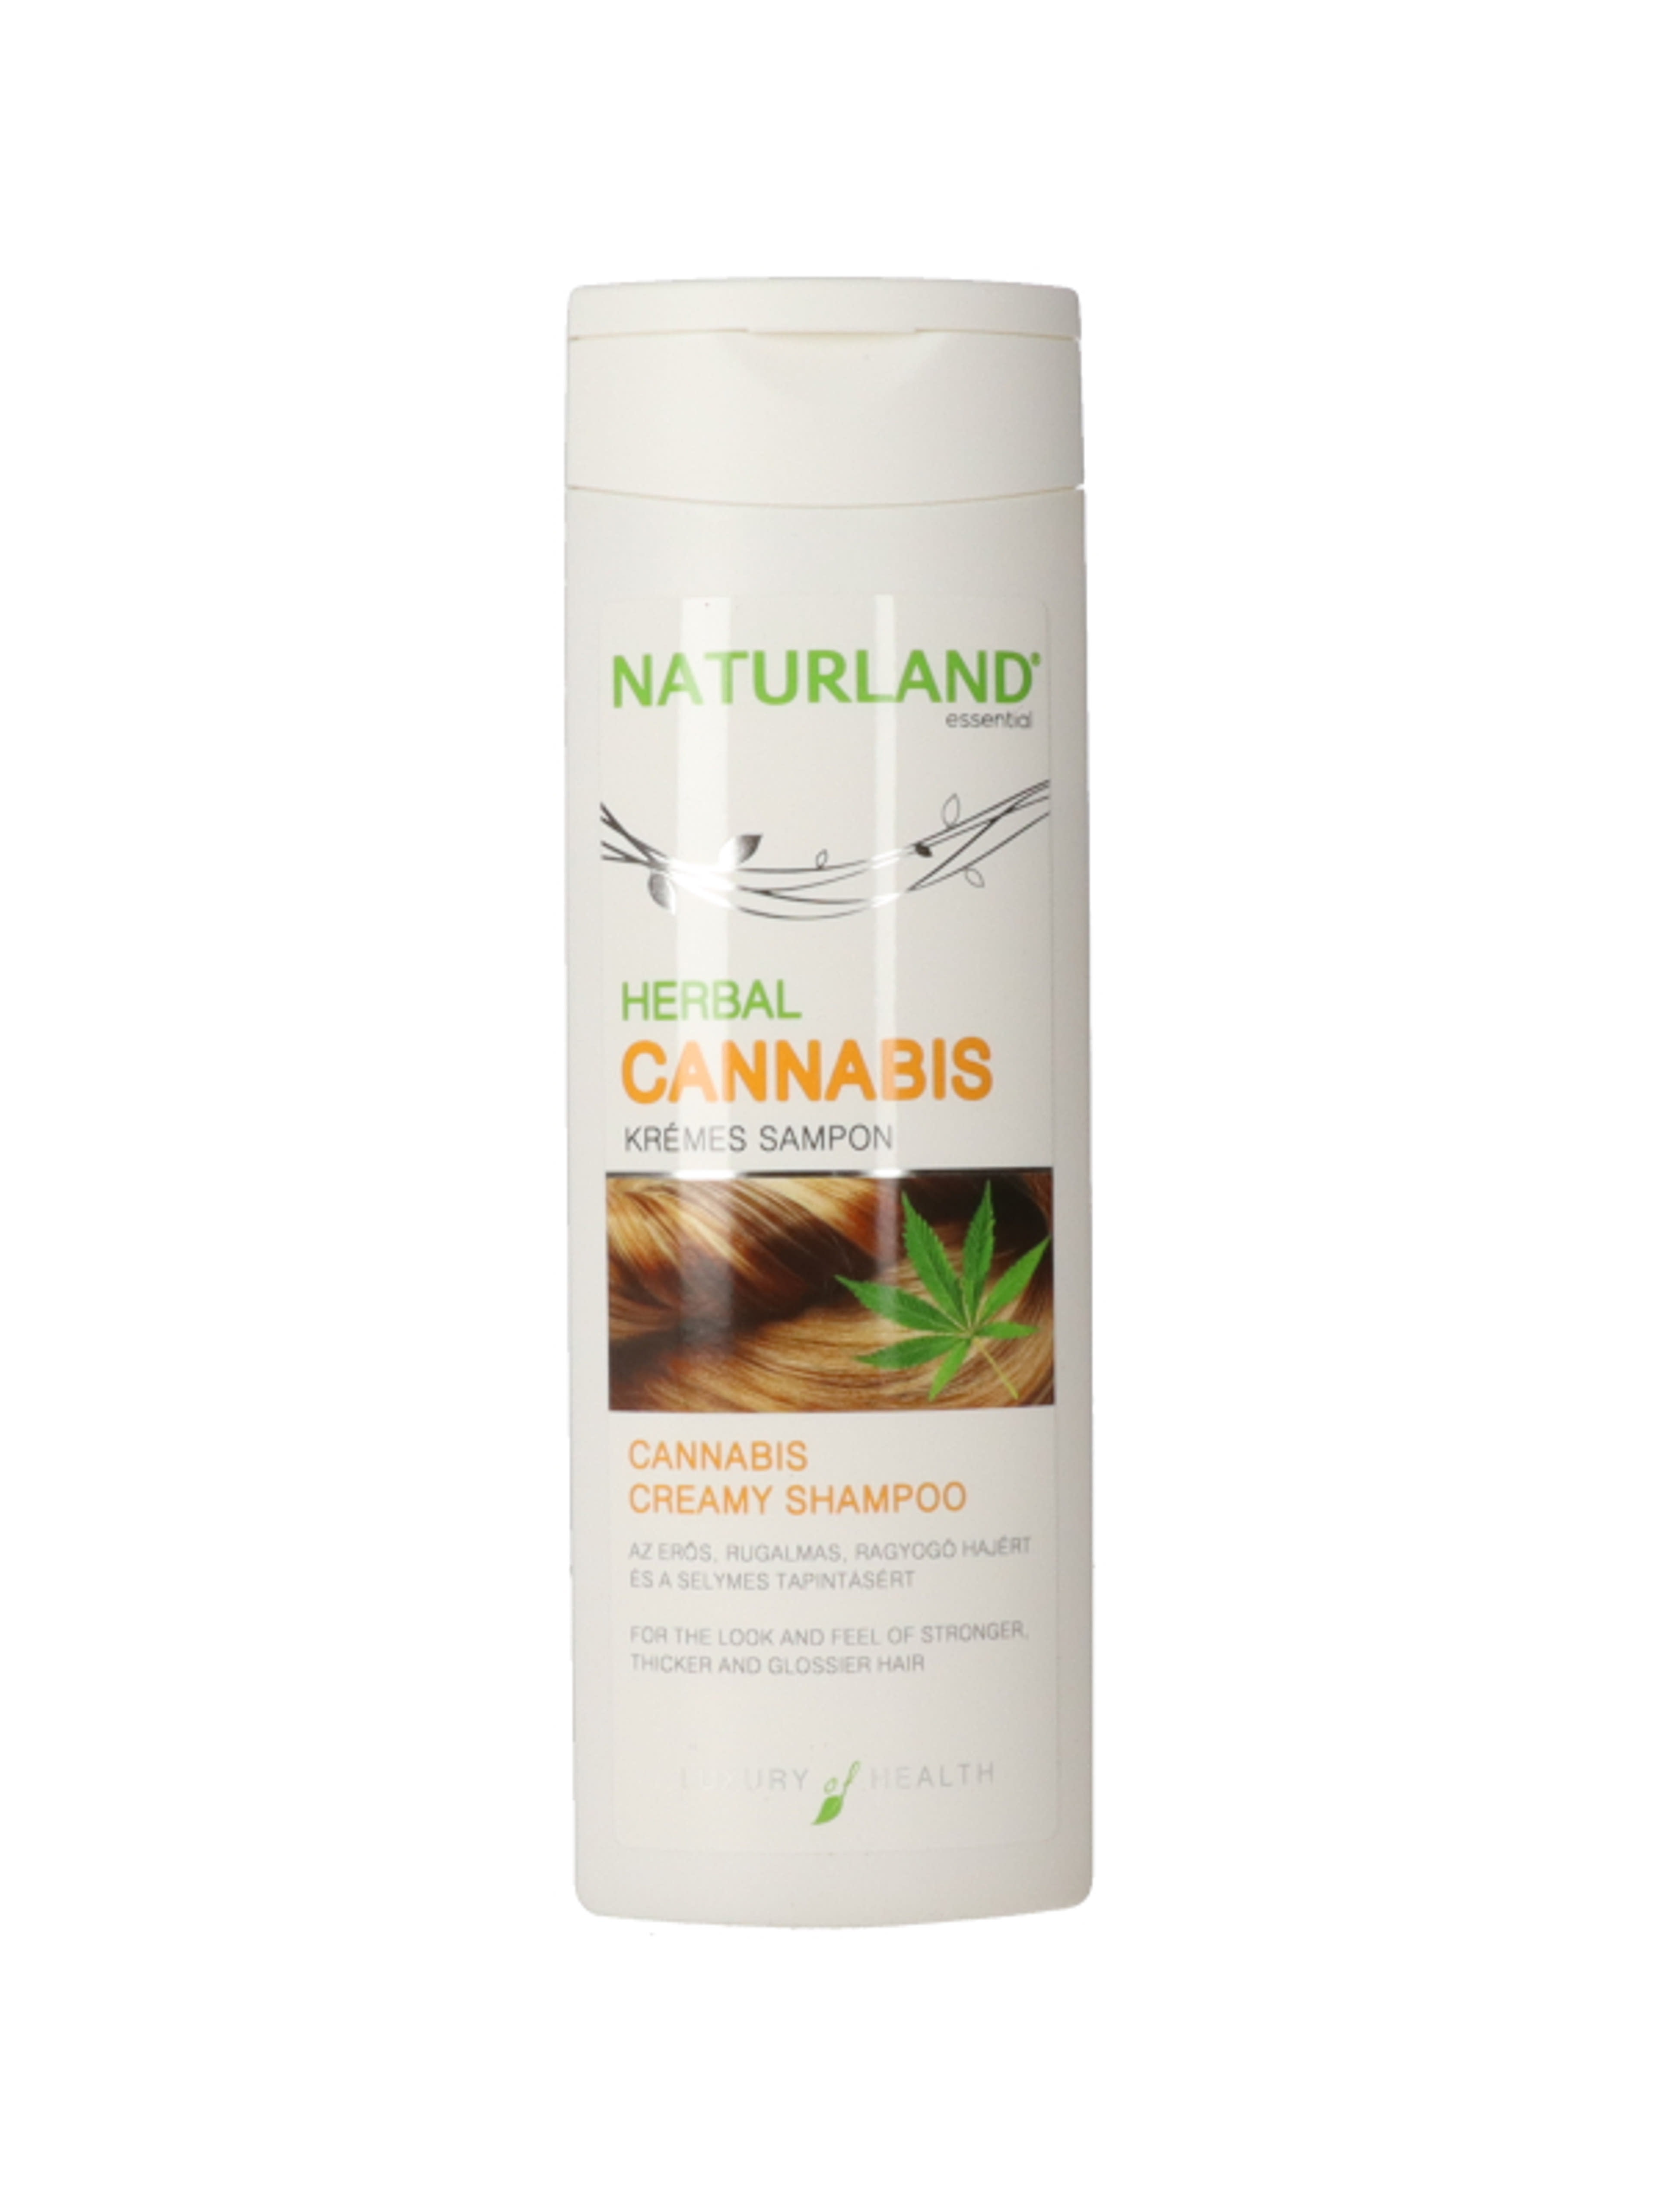 Naturland herbal cannabis krémes sampon - 200 ml-1